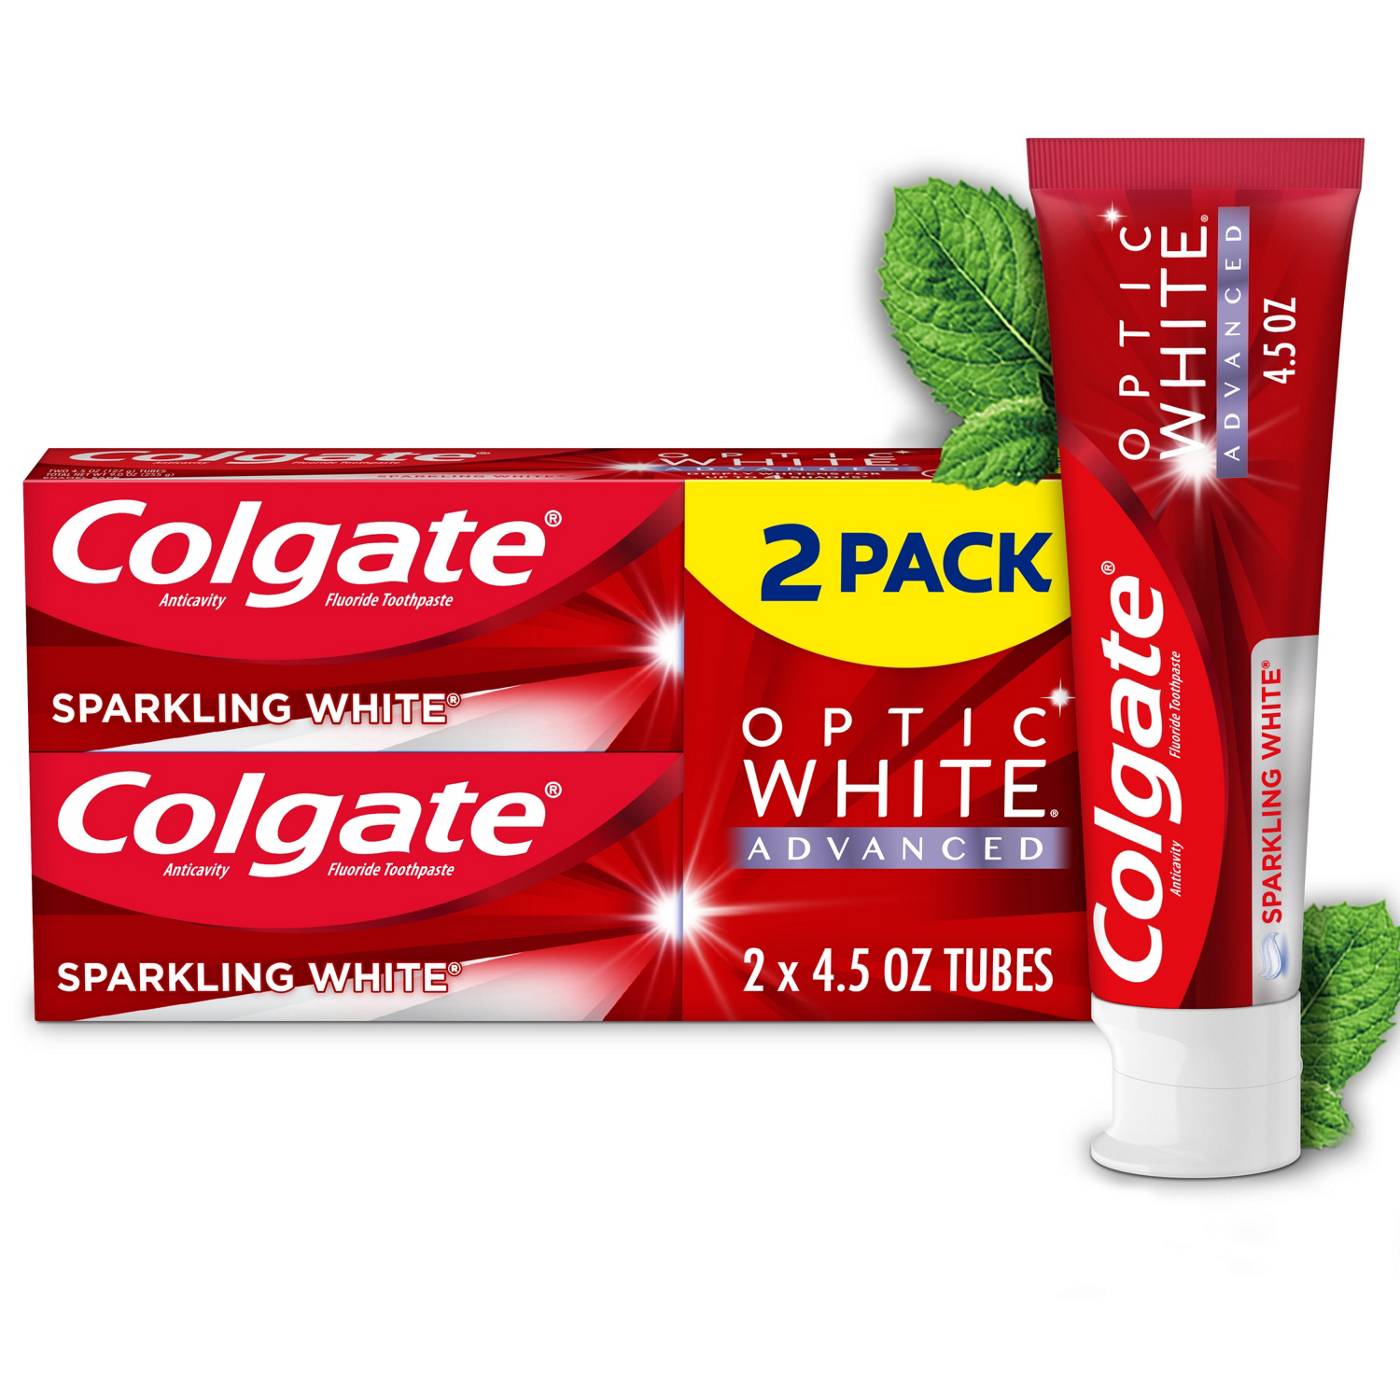 Colgate Optic White Advanced Toothpaste - Sparkling White, 2 Pk; image 6 of 8